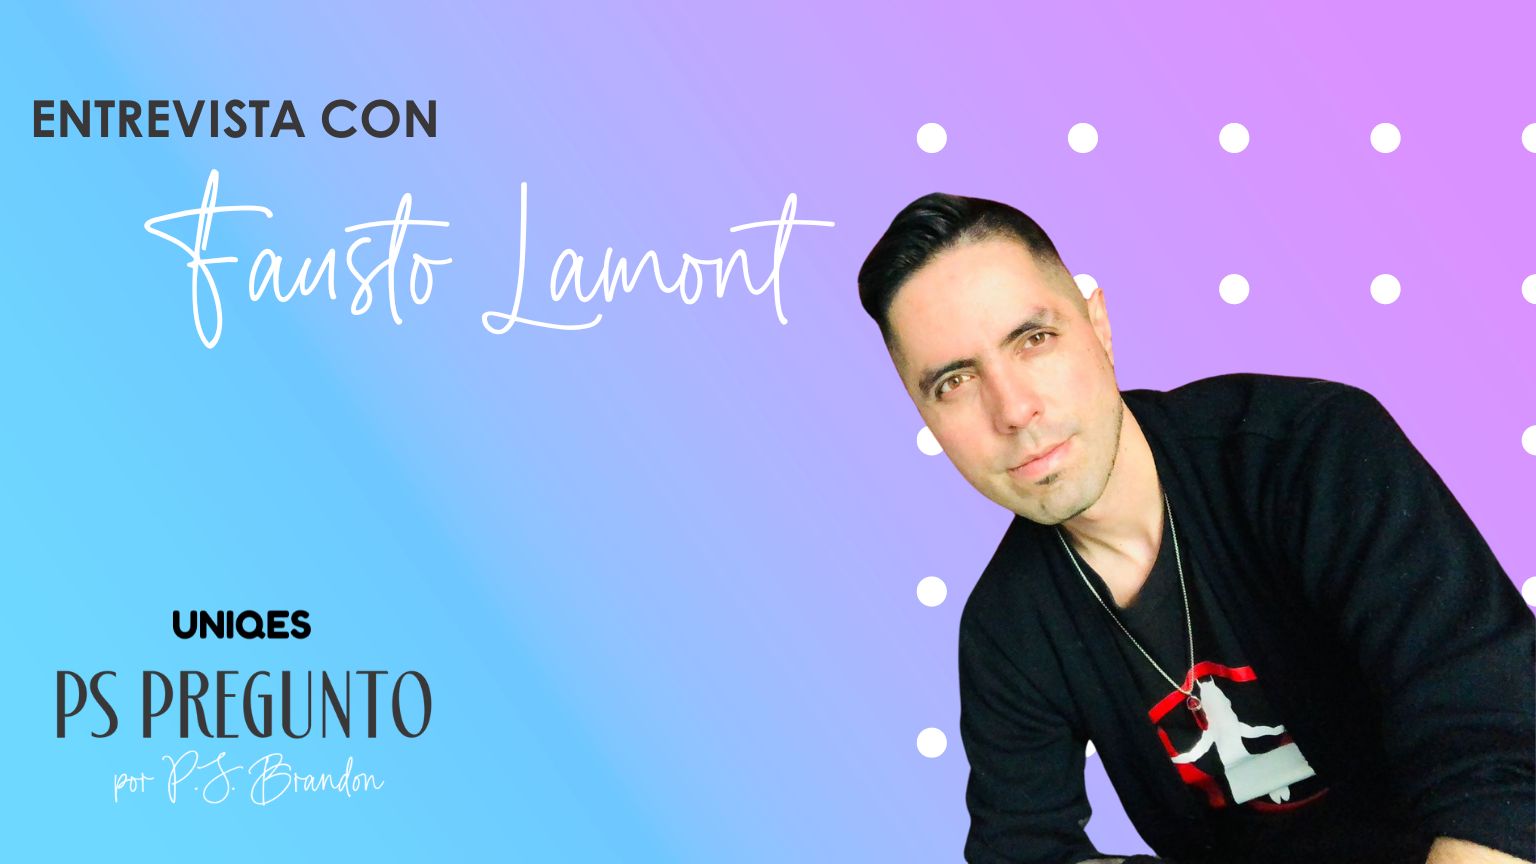 PS Preguntó: entrevista con Fausto Lamont